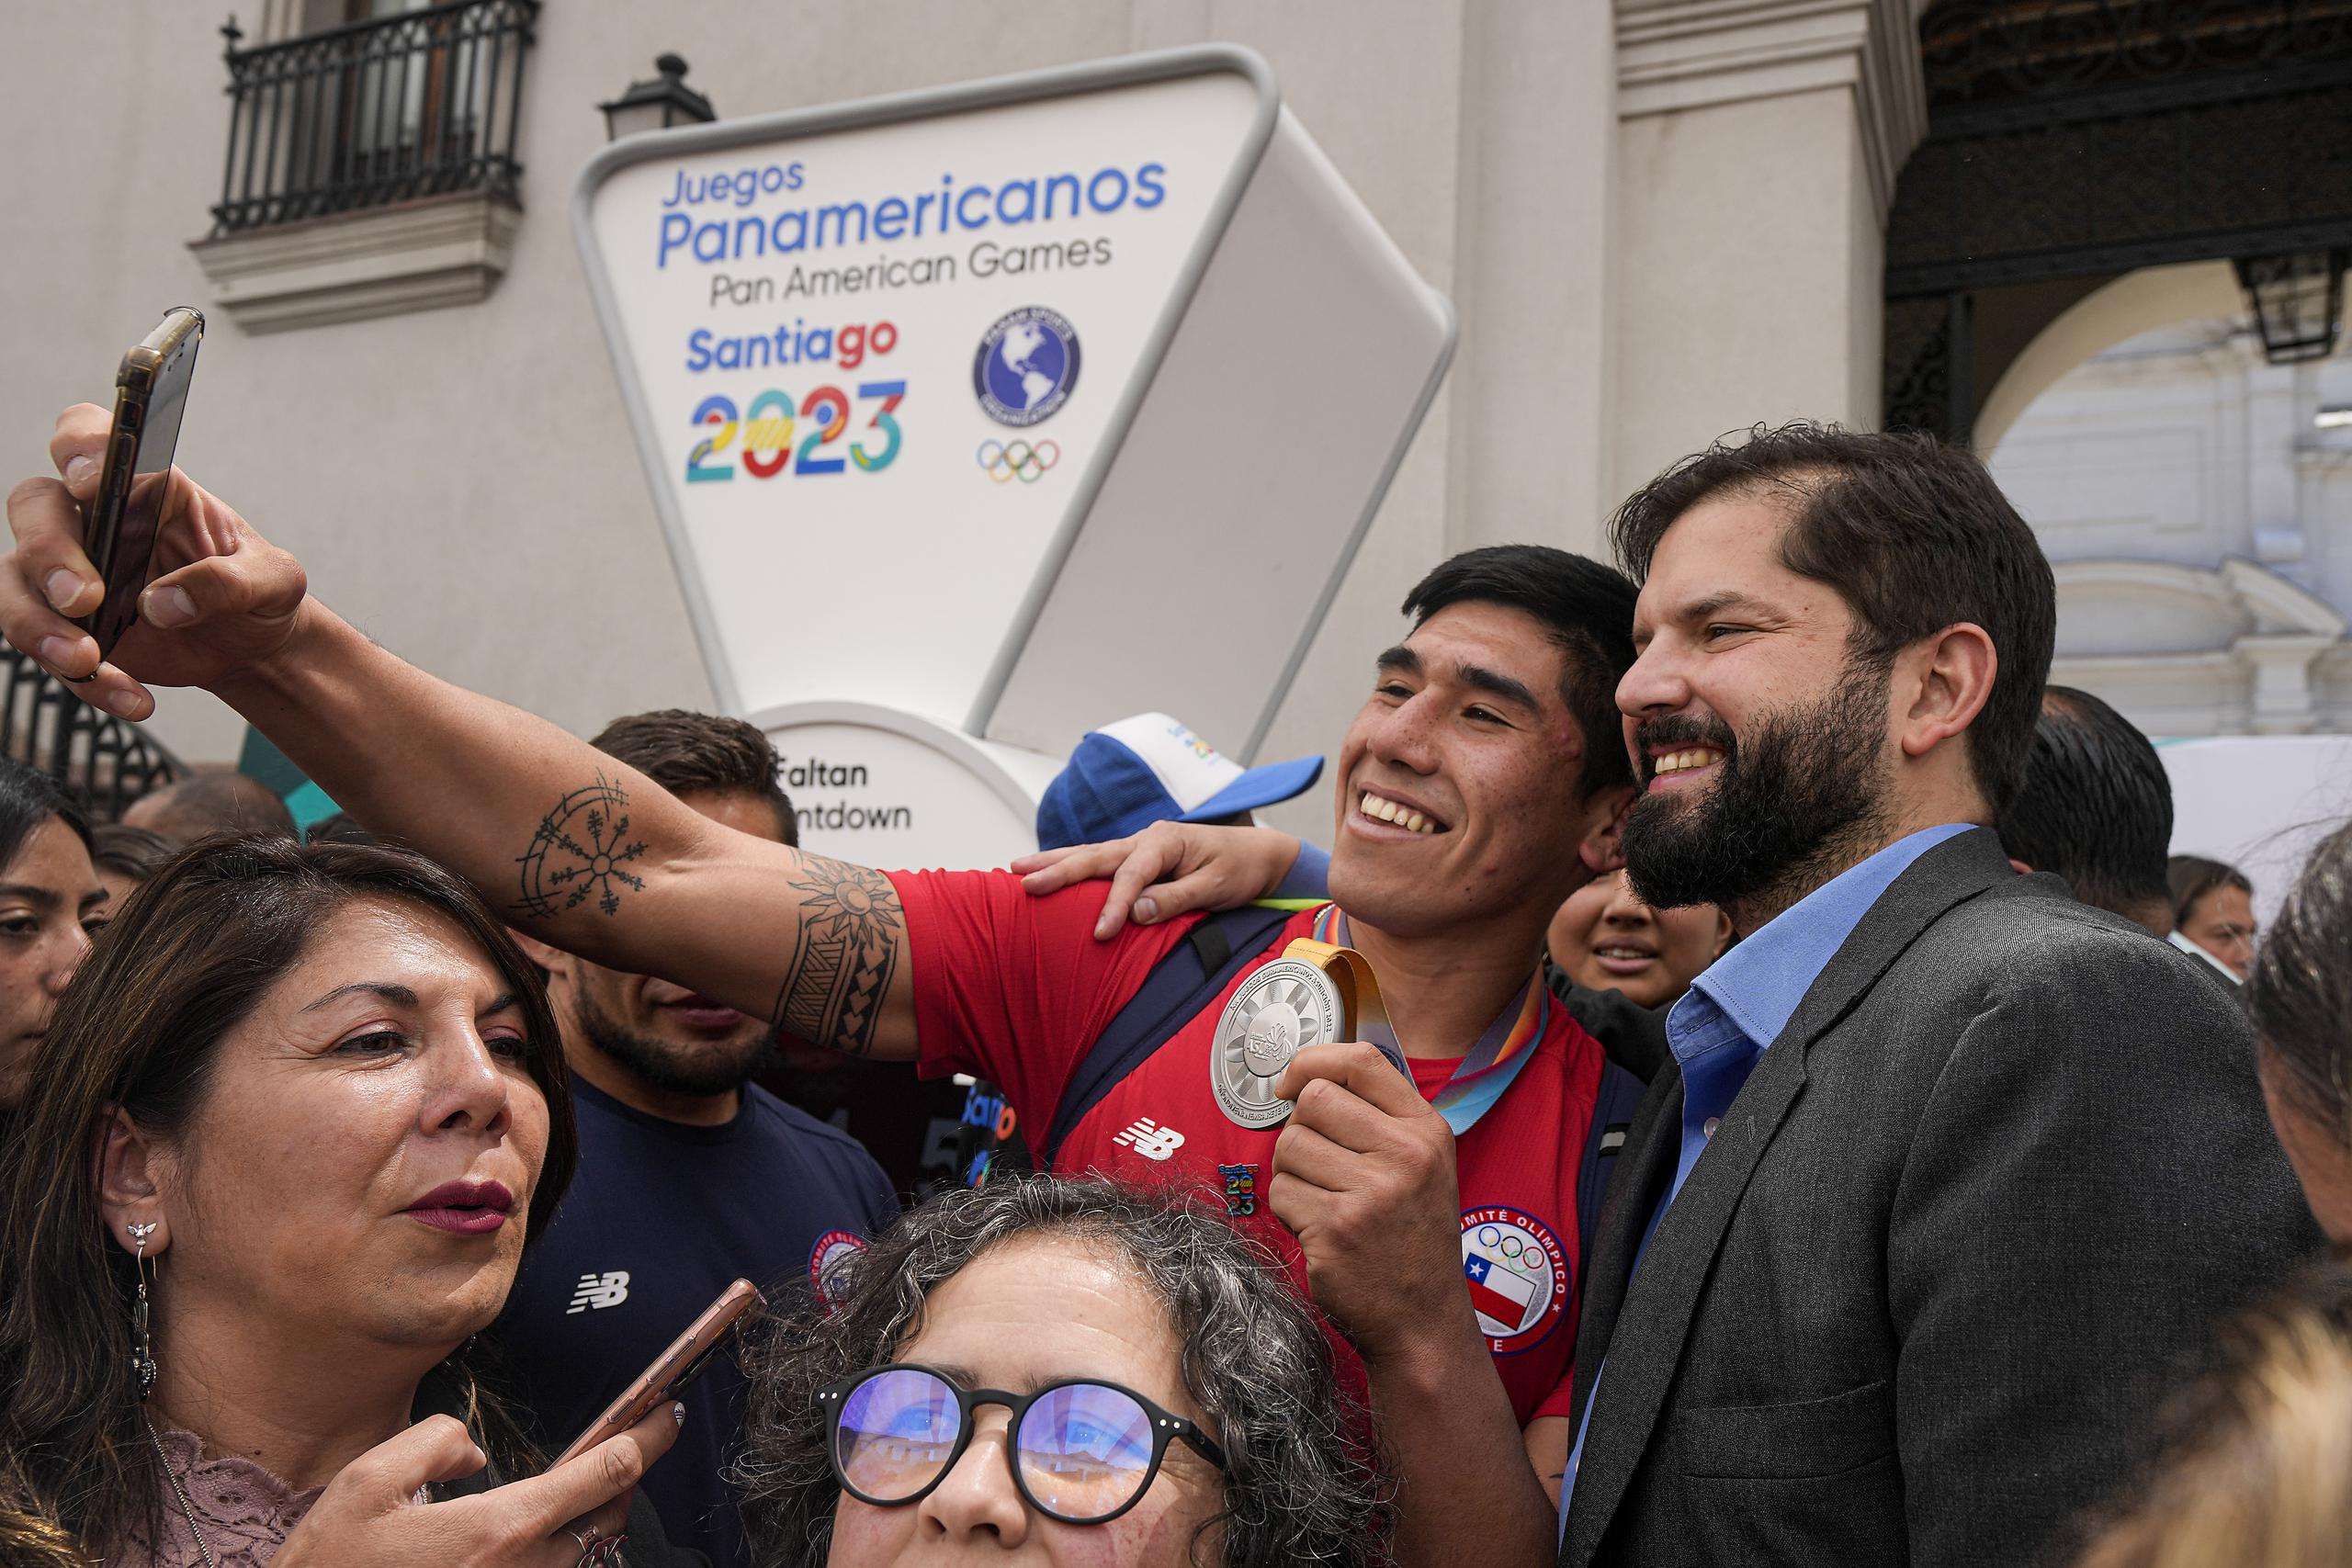 El presidente chileno Gabriel Boric posa para una selfie con un deportista chileno durante la ceremonia que marcó el inicio de la cuenta regresiva para los Juegos Panamericanos y Parapanamericanos de 2023.